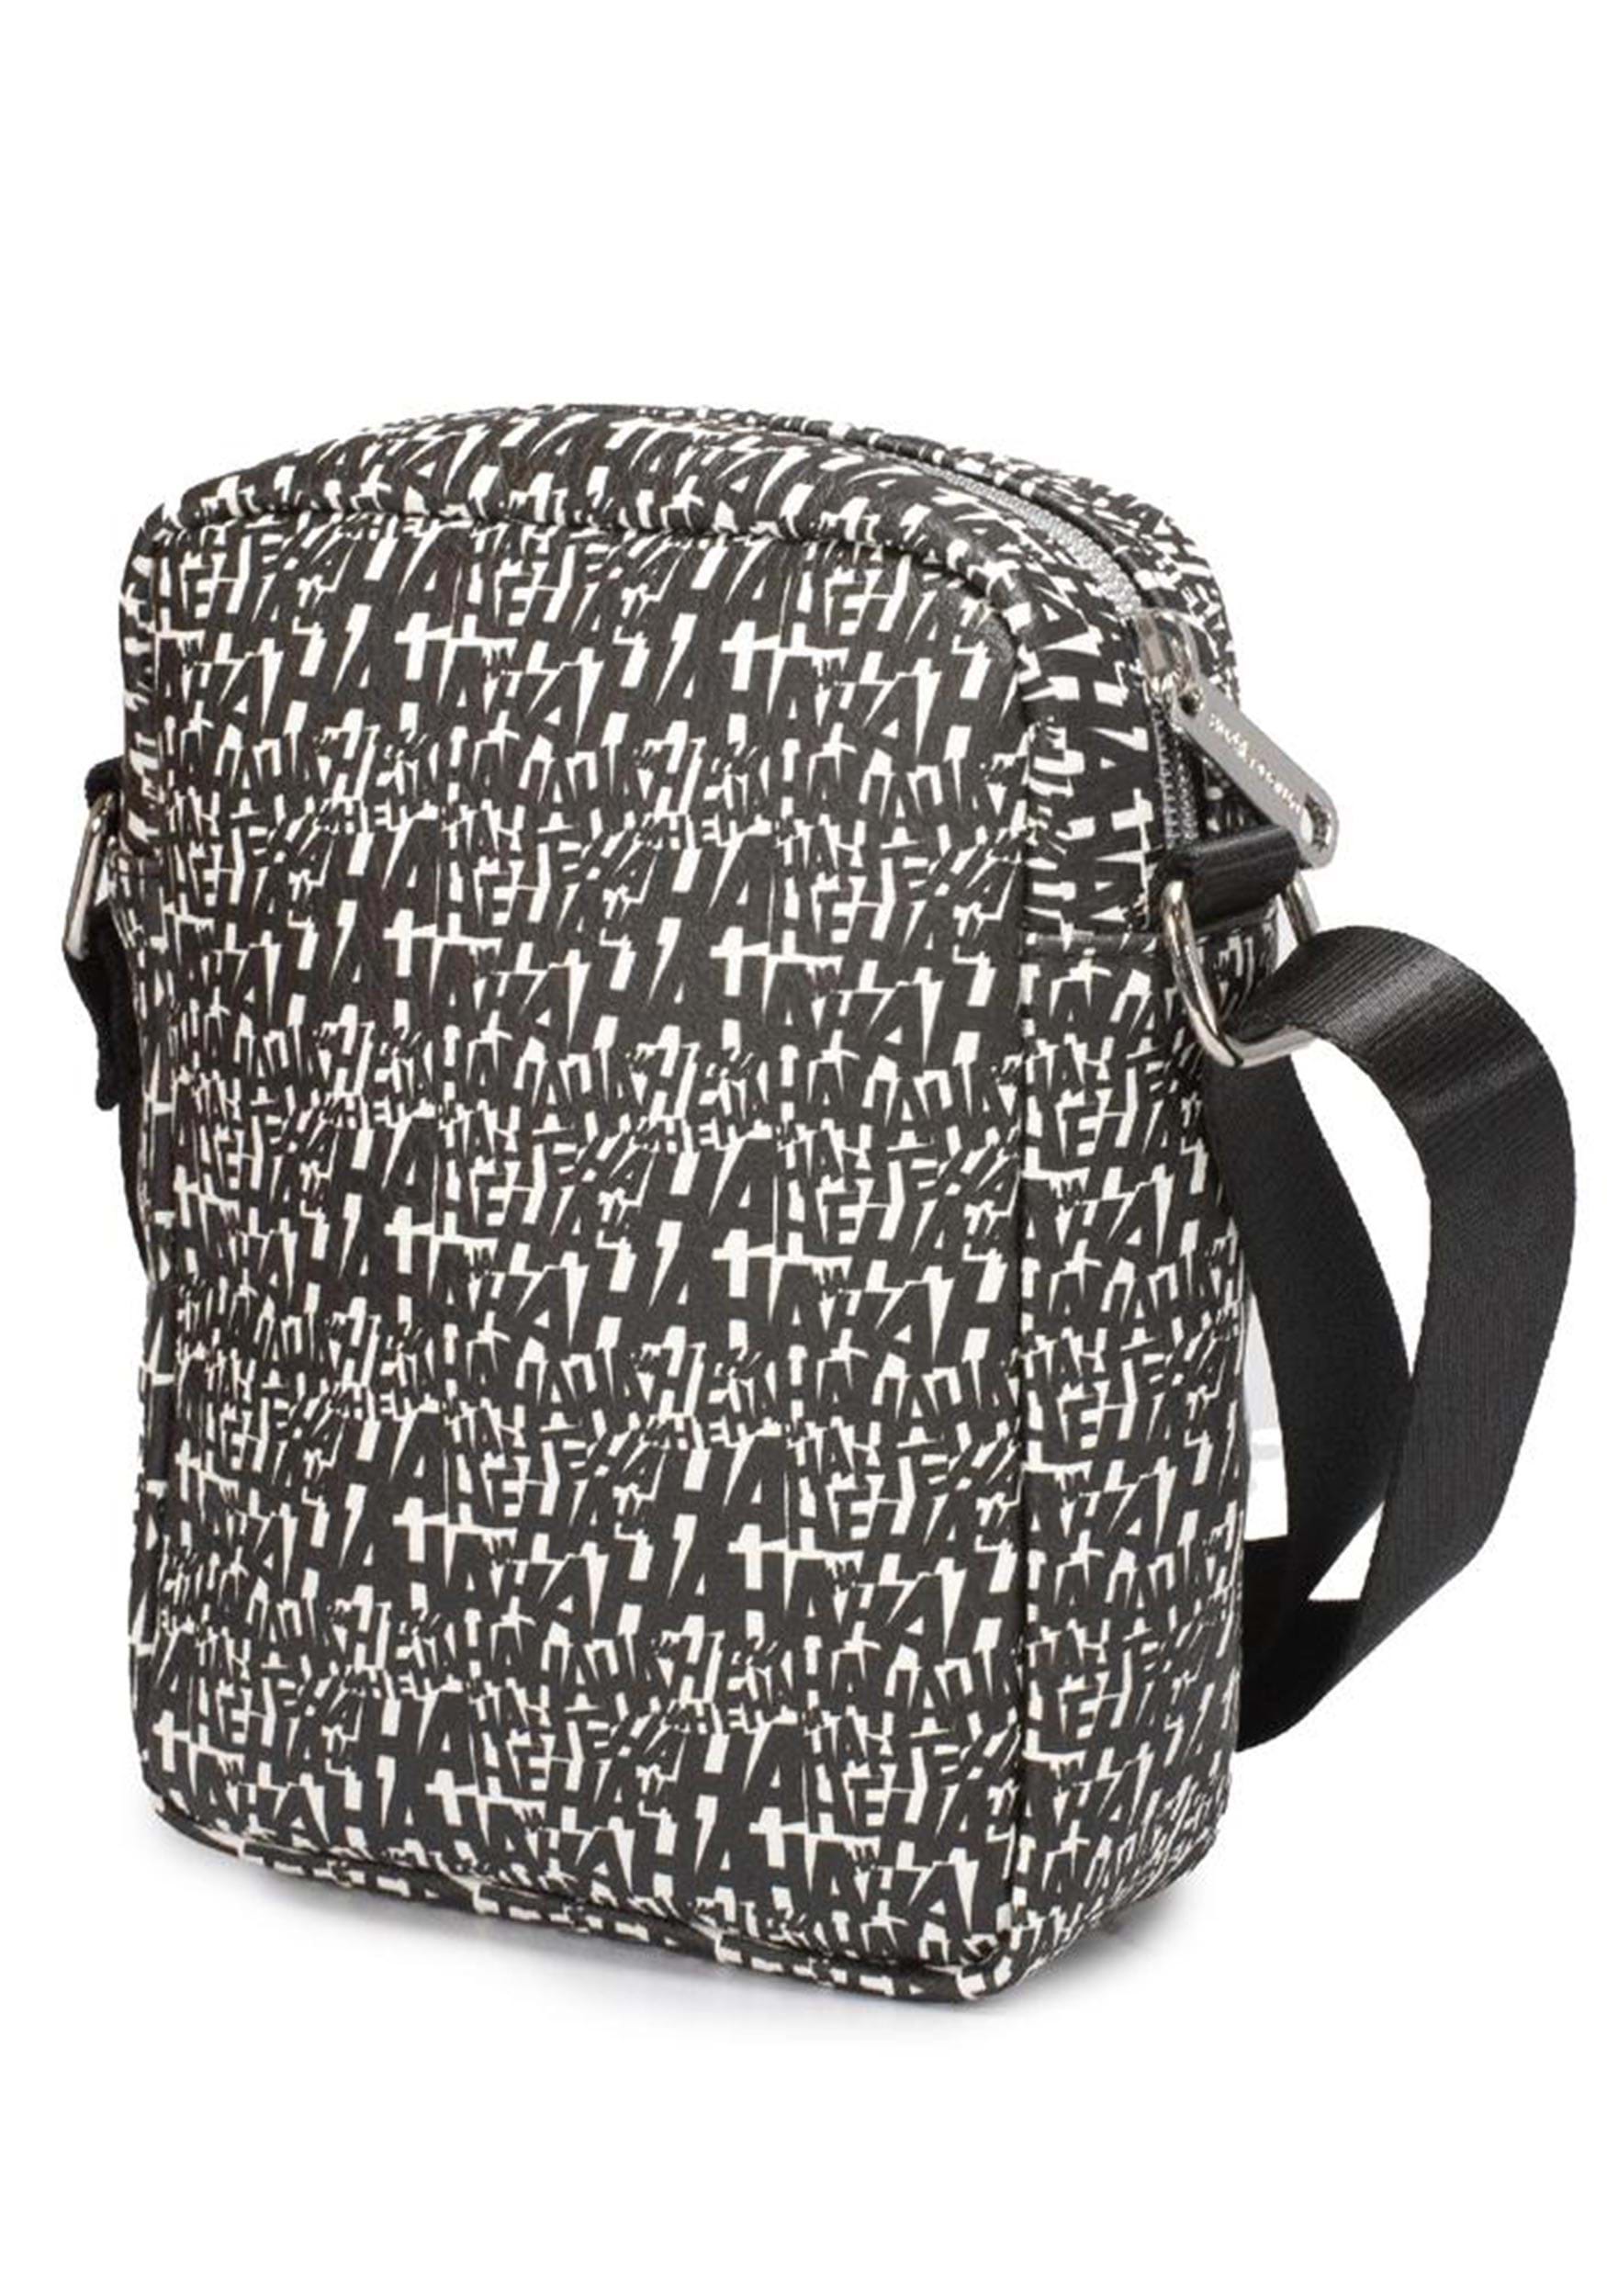 Printed Unisex DUCKBACK JOKER SCHOOL BAG, For Casual Backpack